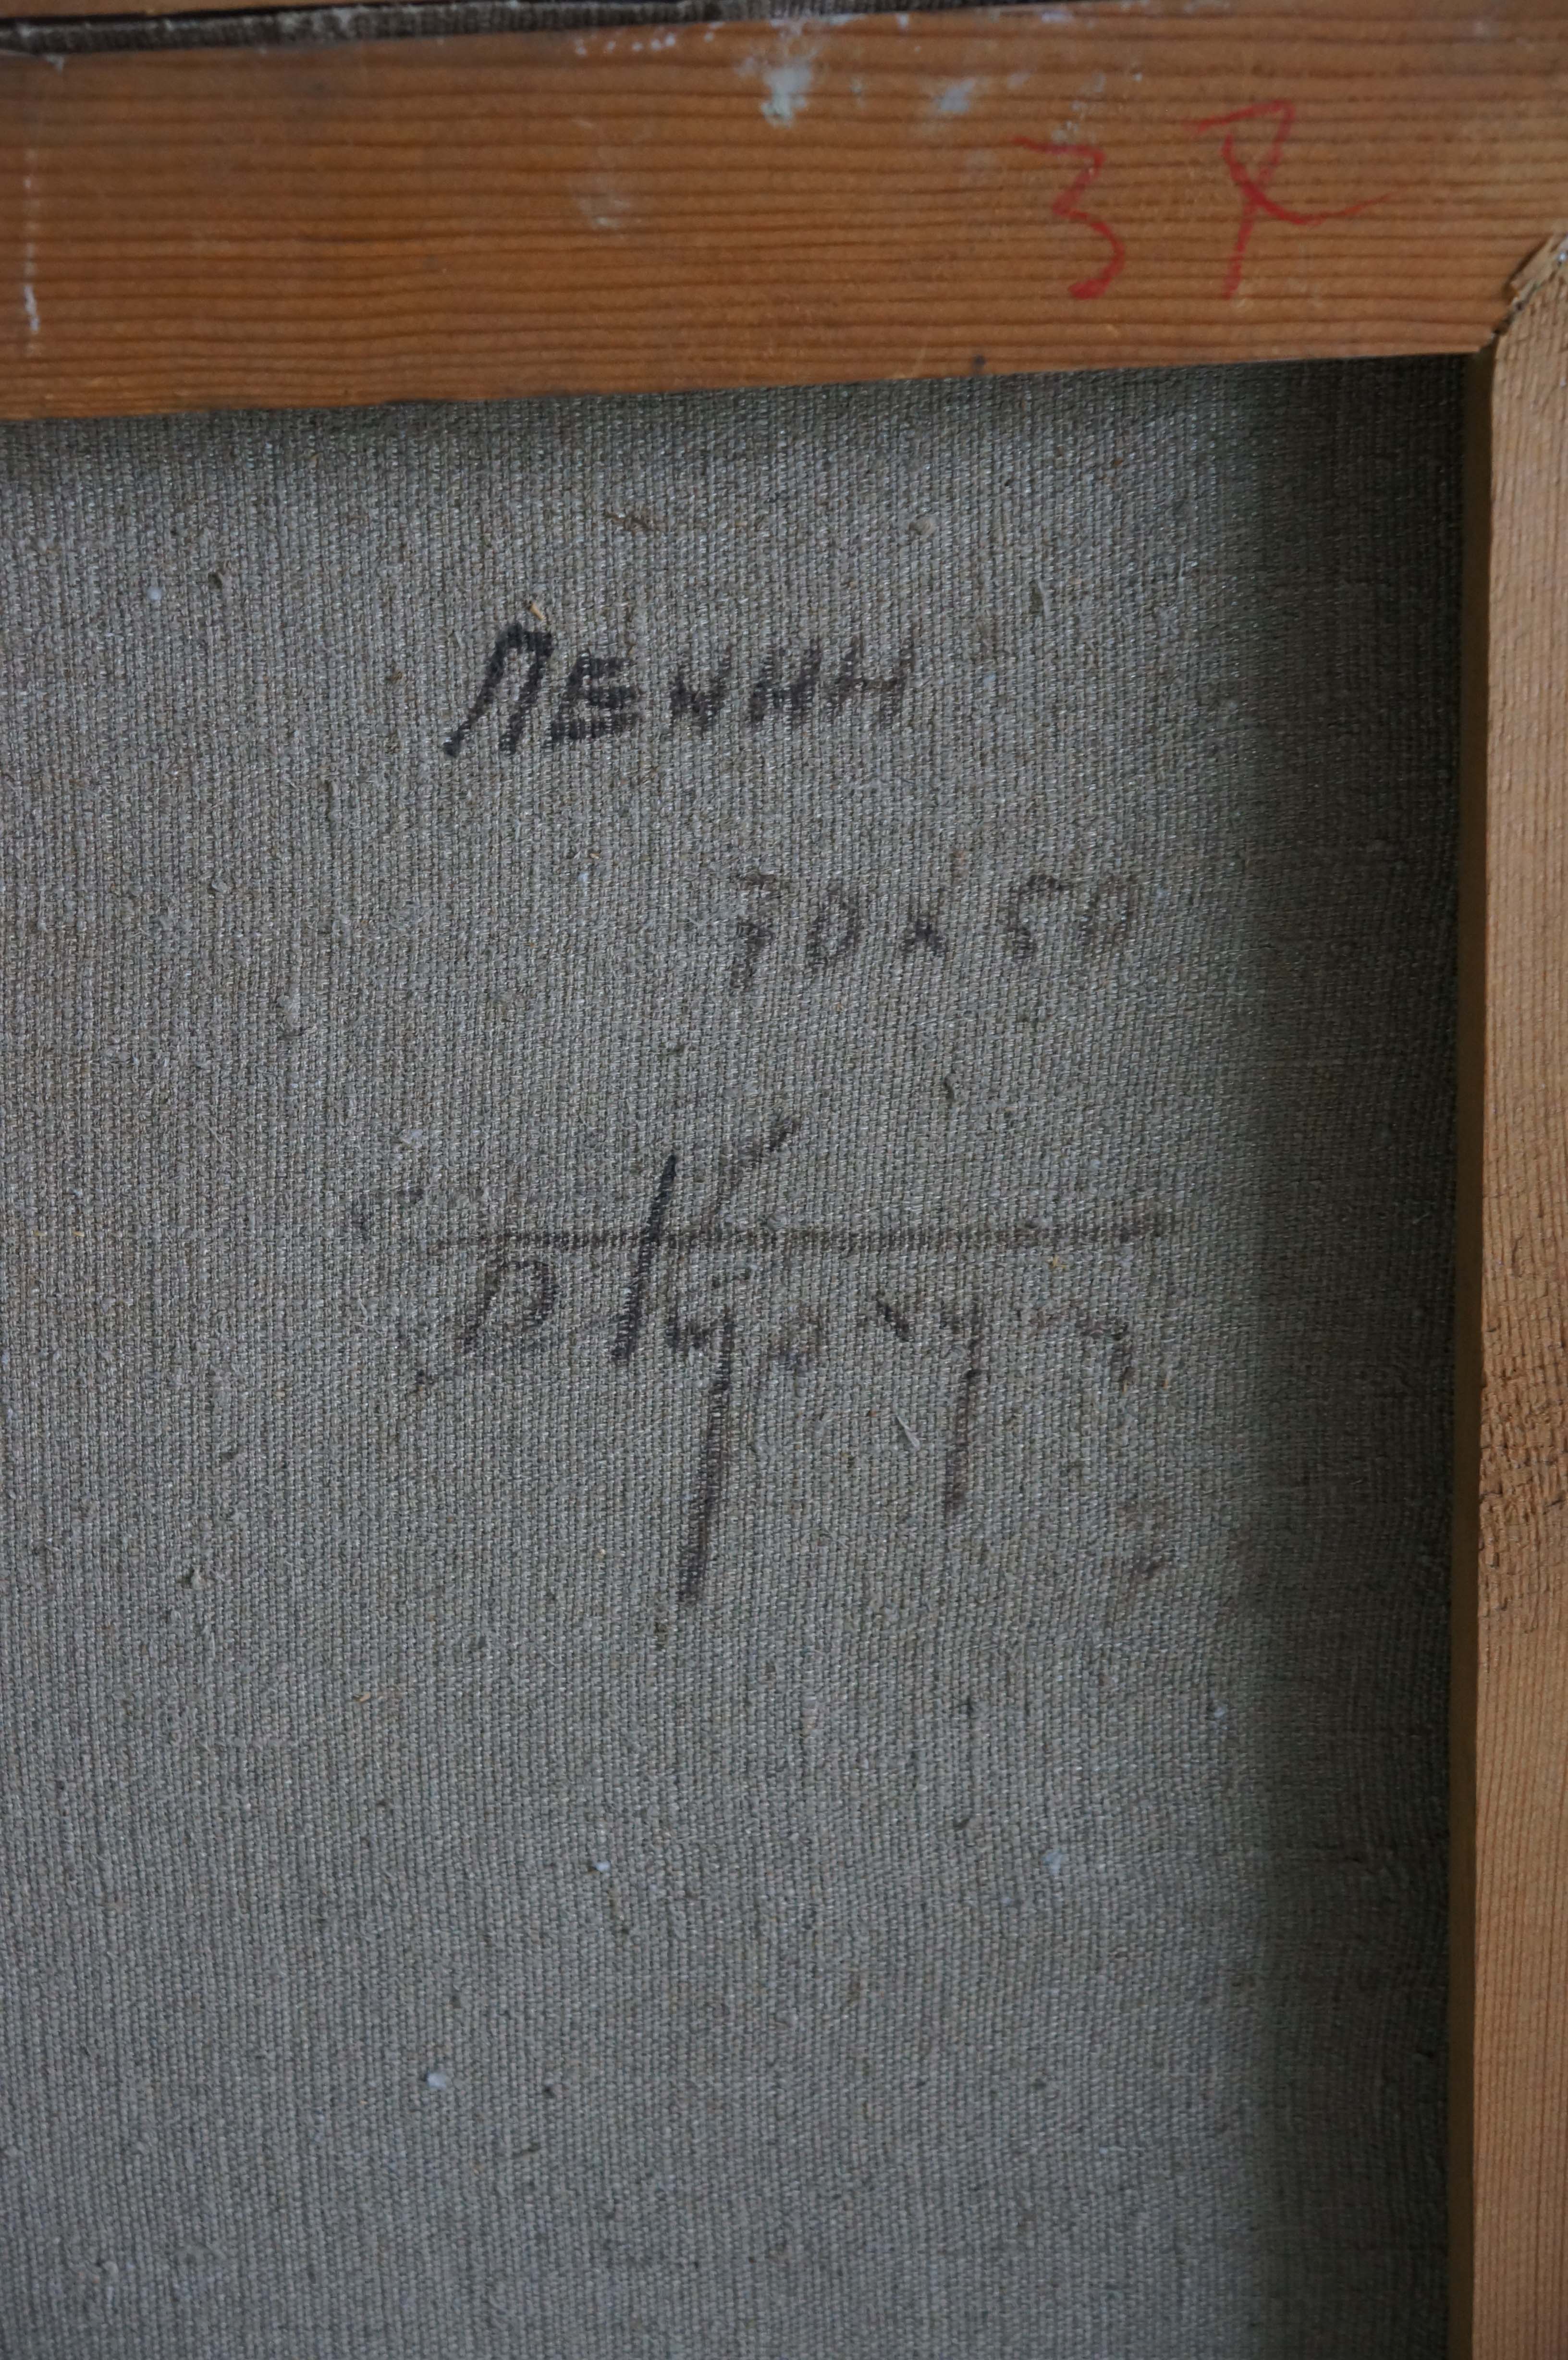 Ленин 70-50 см., холст, масло  1975 год  - 3